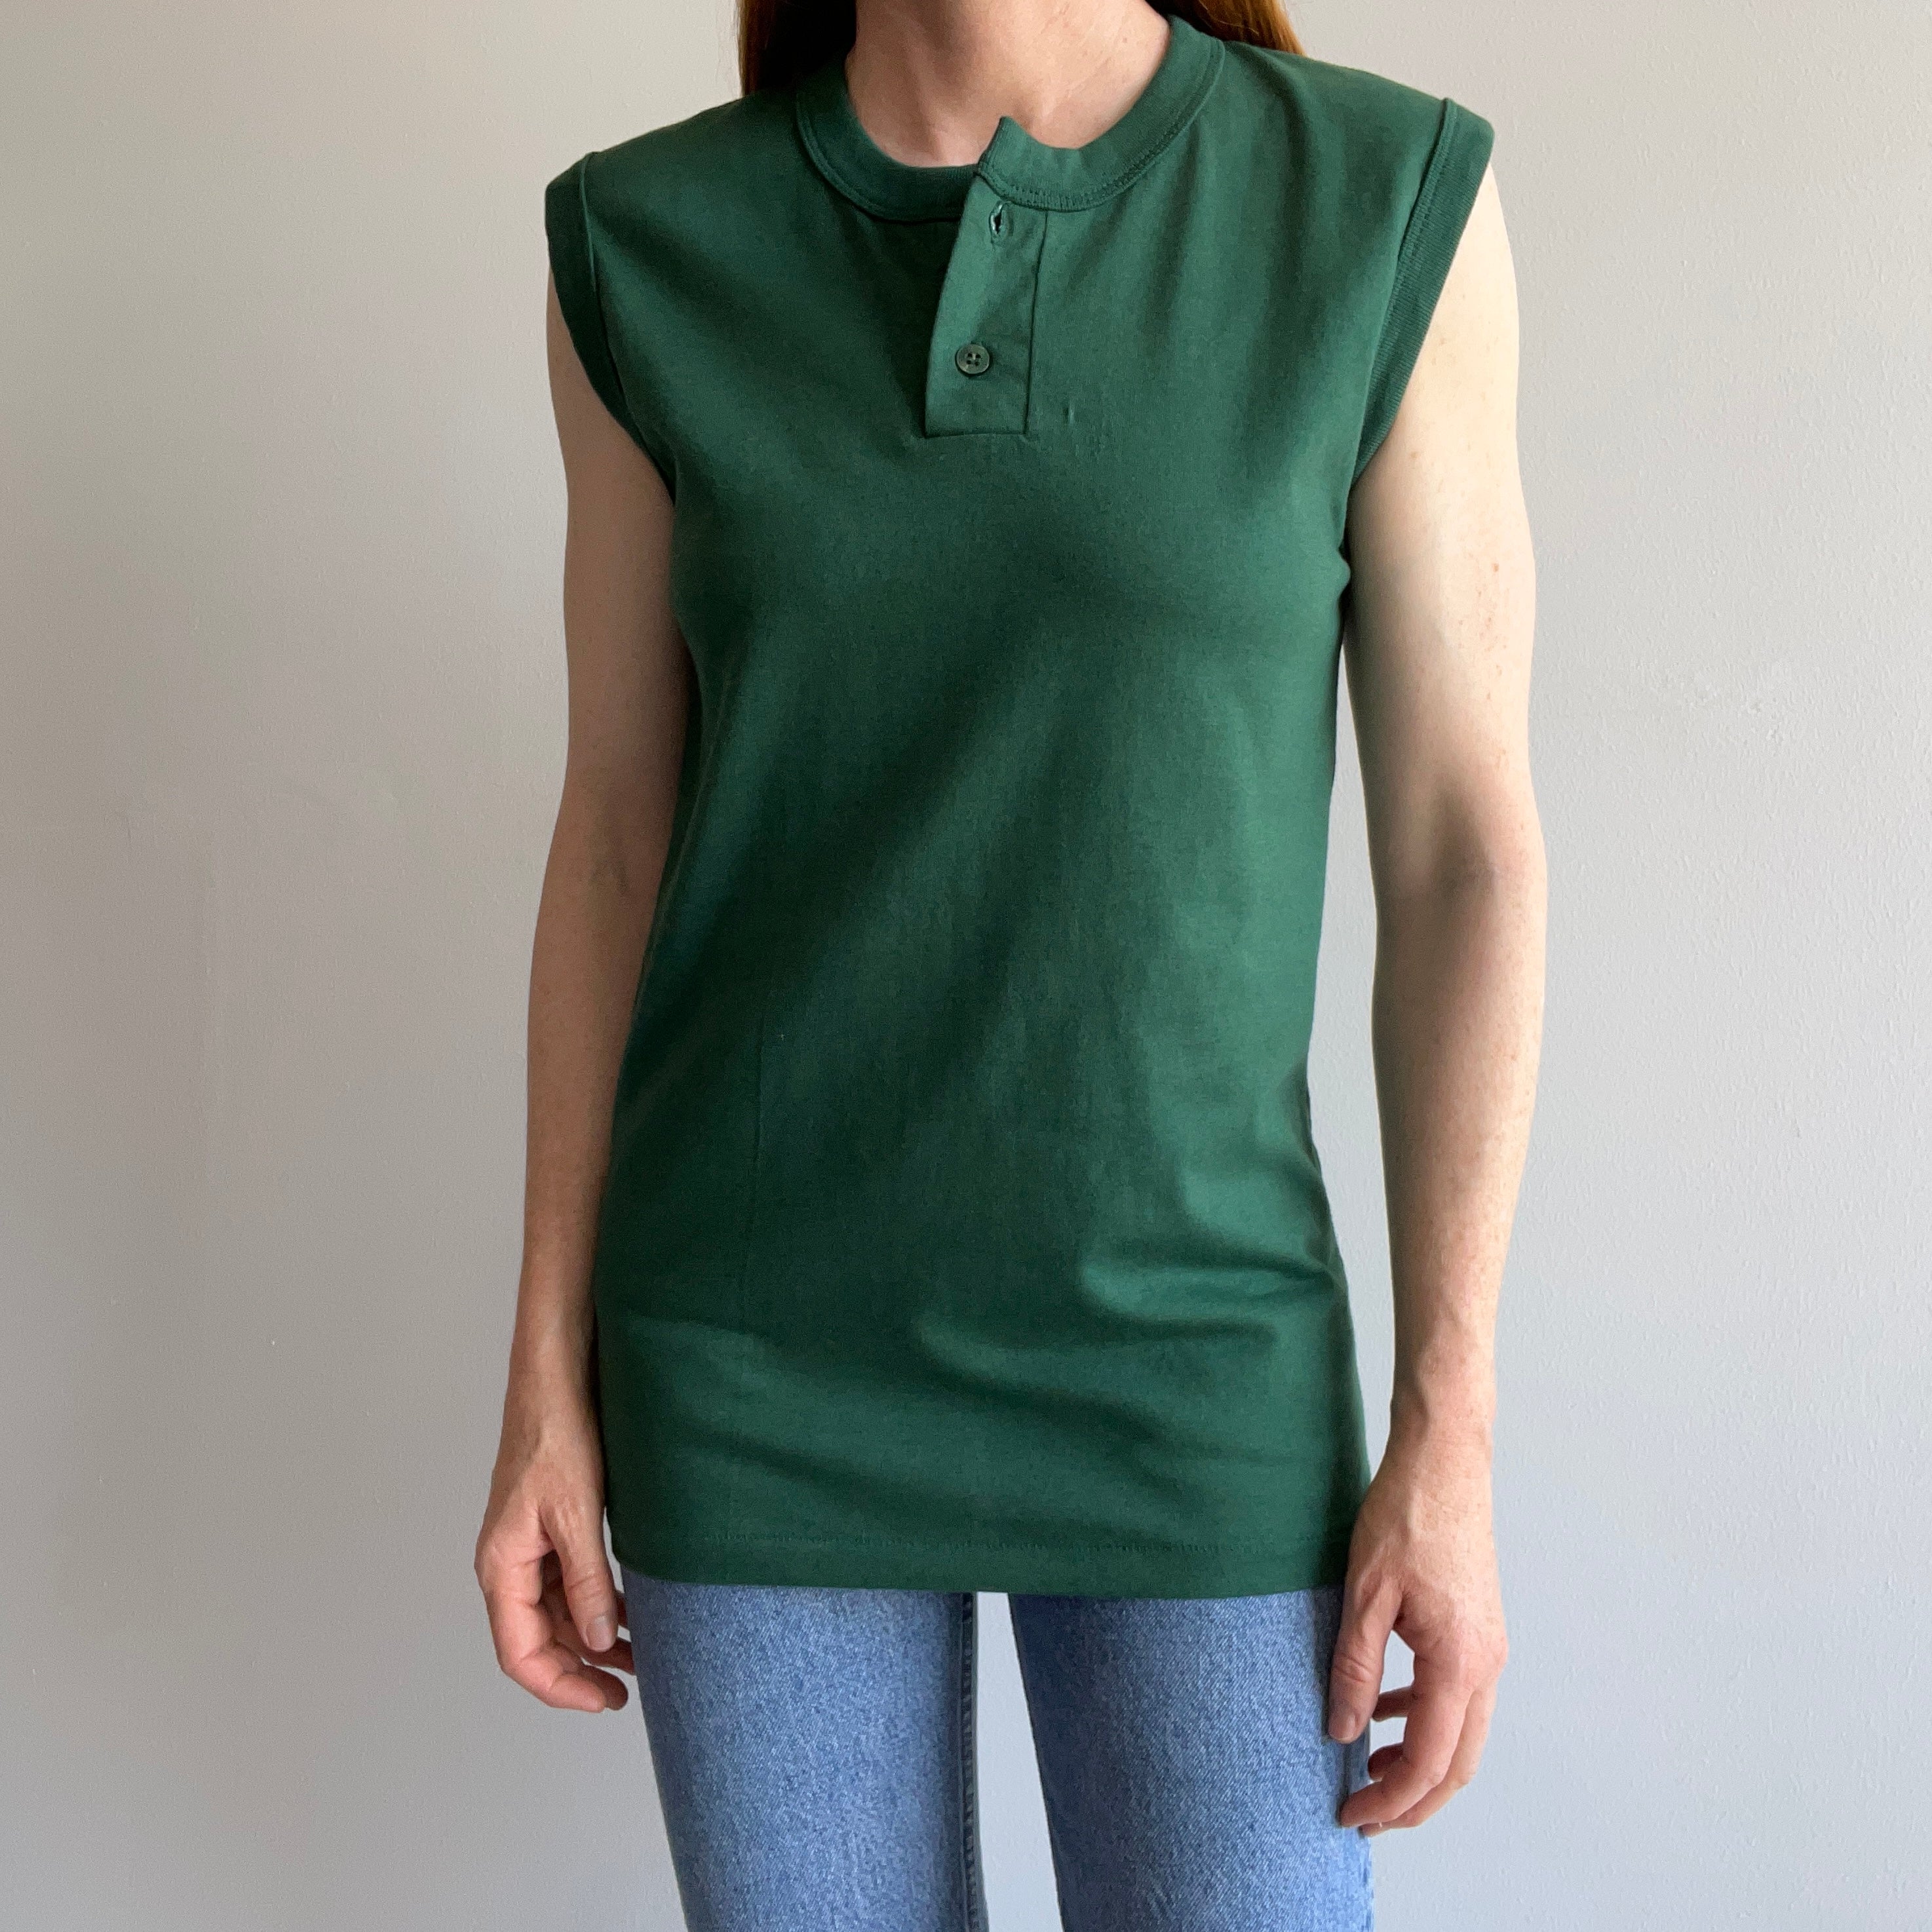 1980s Sleeveless Forest Green Henley Shirt